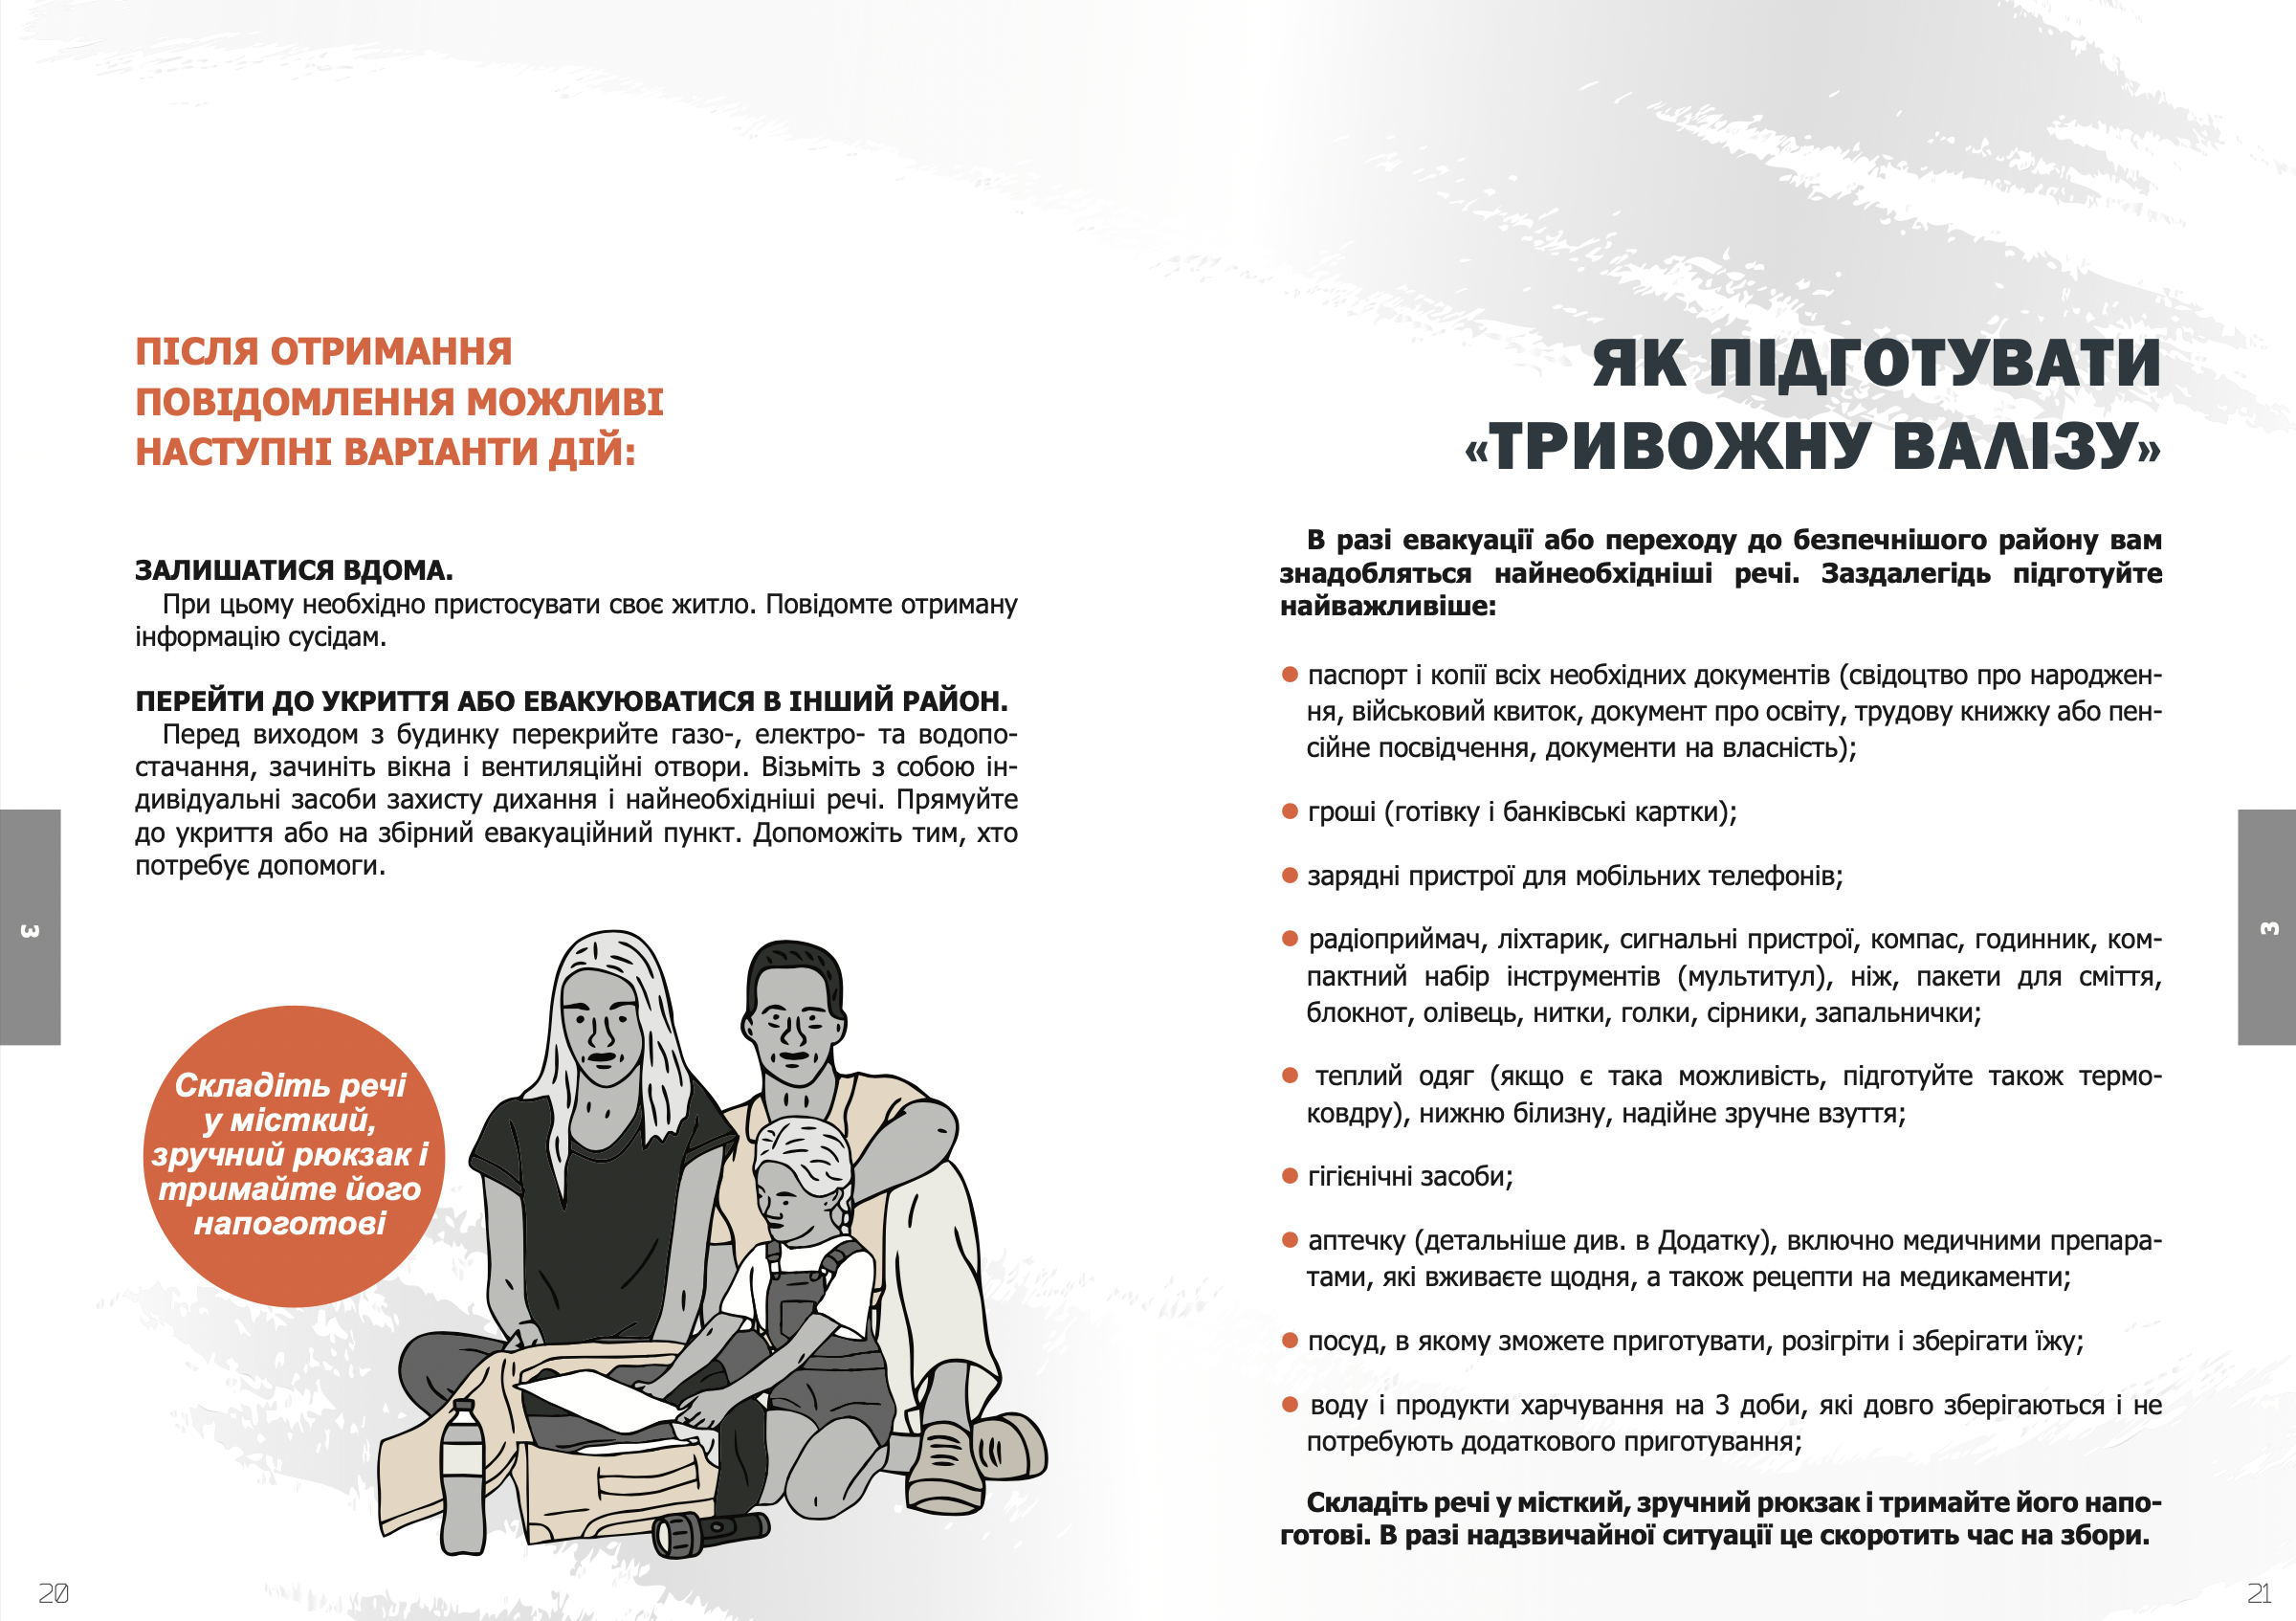 Центр коммуникаций при Минкульте представил брошюру с советами на случай полномасштабной войны с Россией